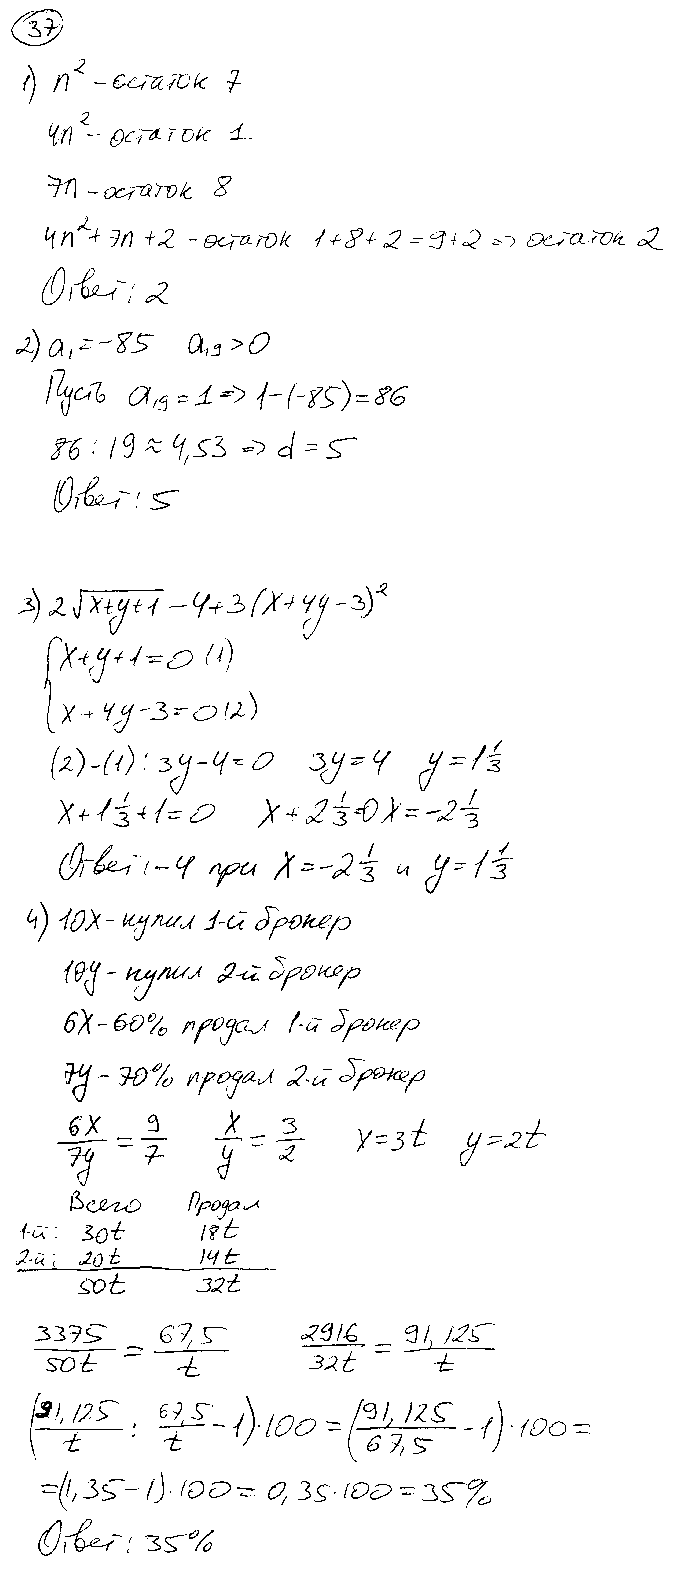 ГДЗ Алгебра 9 класс - 37